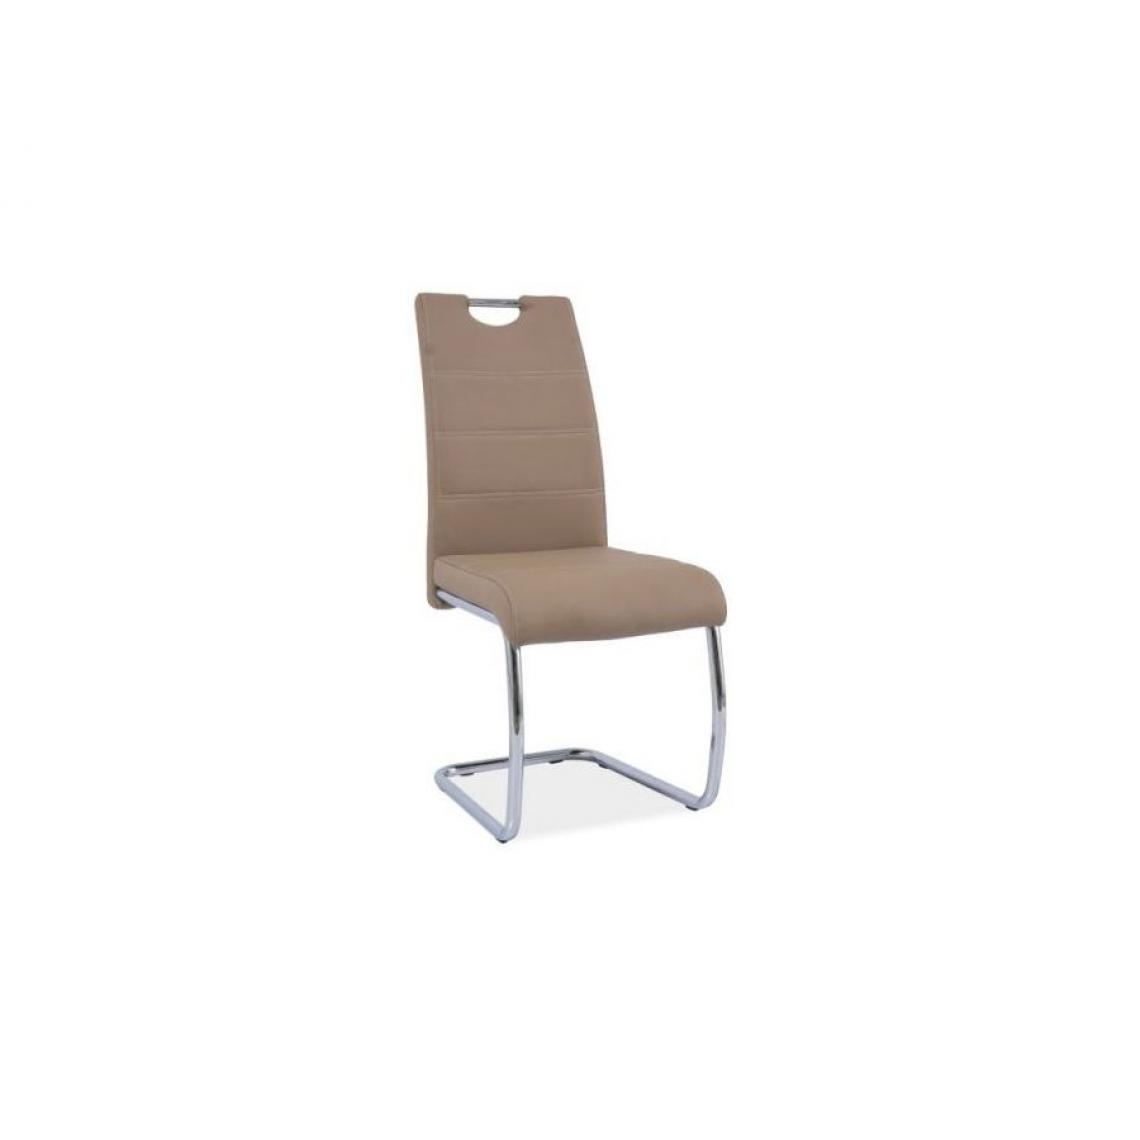 Hucoco - BATE | Chaise moderne avec base chromée salle à manger/salon/bureau | 98x42x45 cm | Similicuir | Chaise élégante cuisine - Beige - Chaises